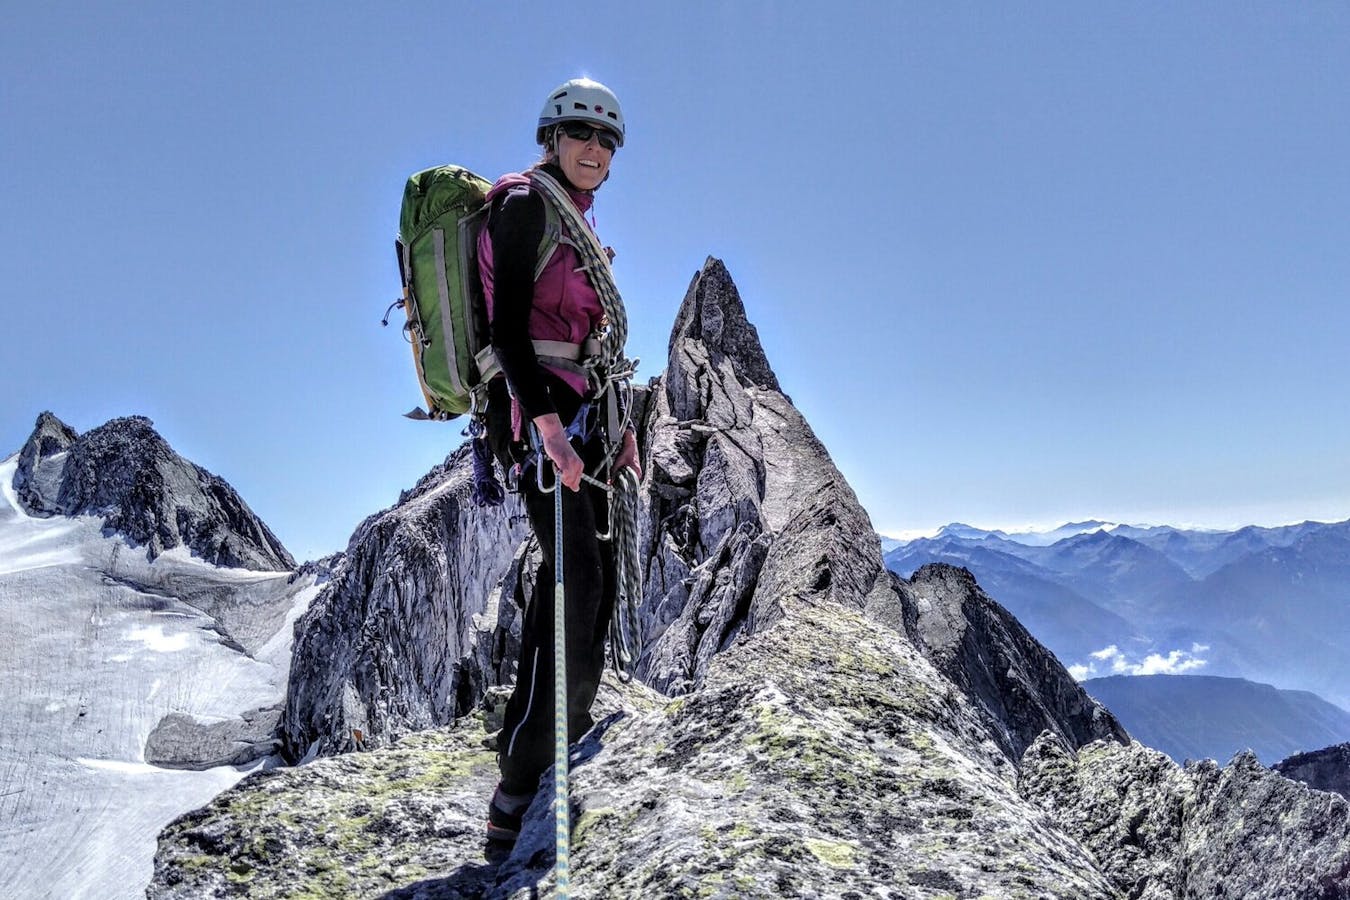 Frauen im Bergsport: Interview mit Ariane Stäubli